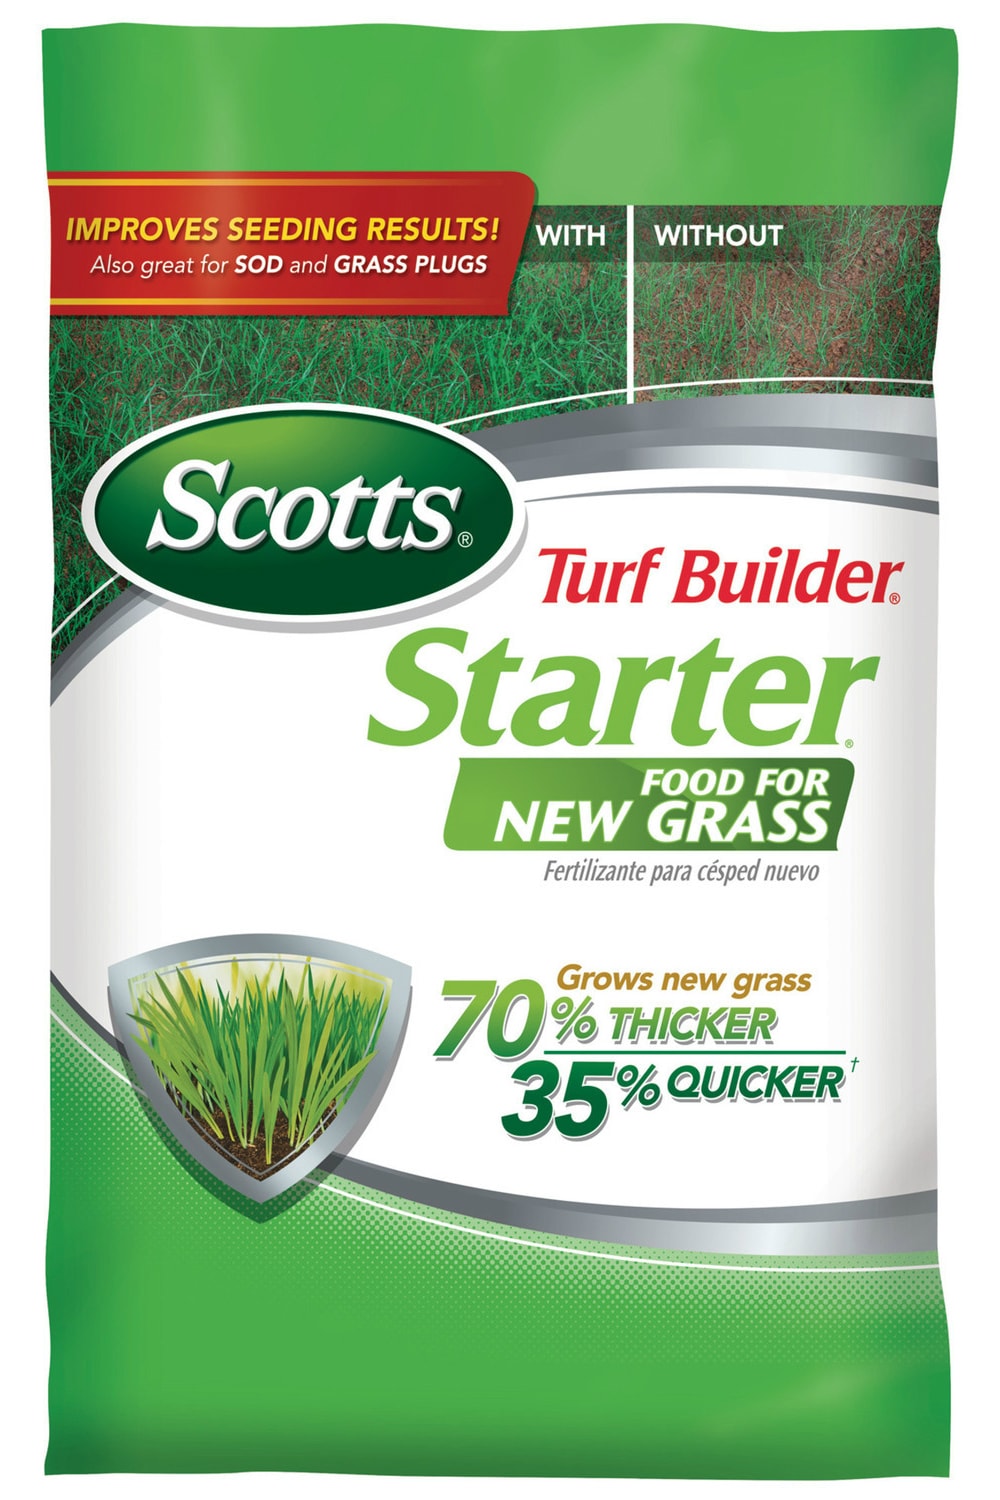 Image of Scotts Turf Builder Starter Fertilizer for New Grass